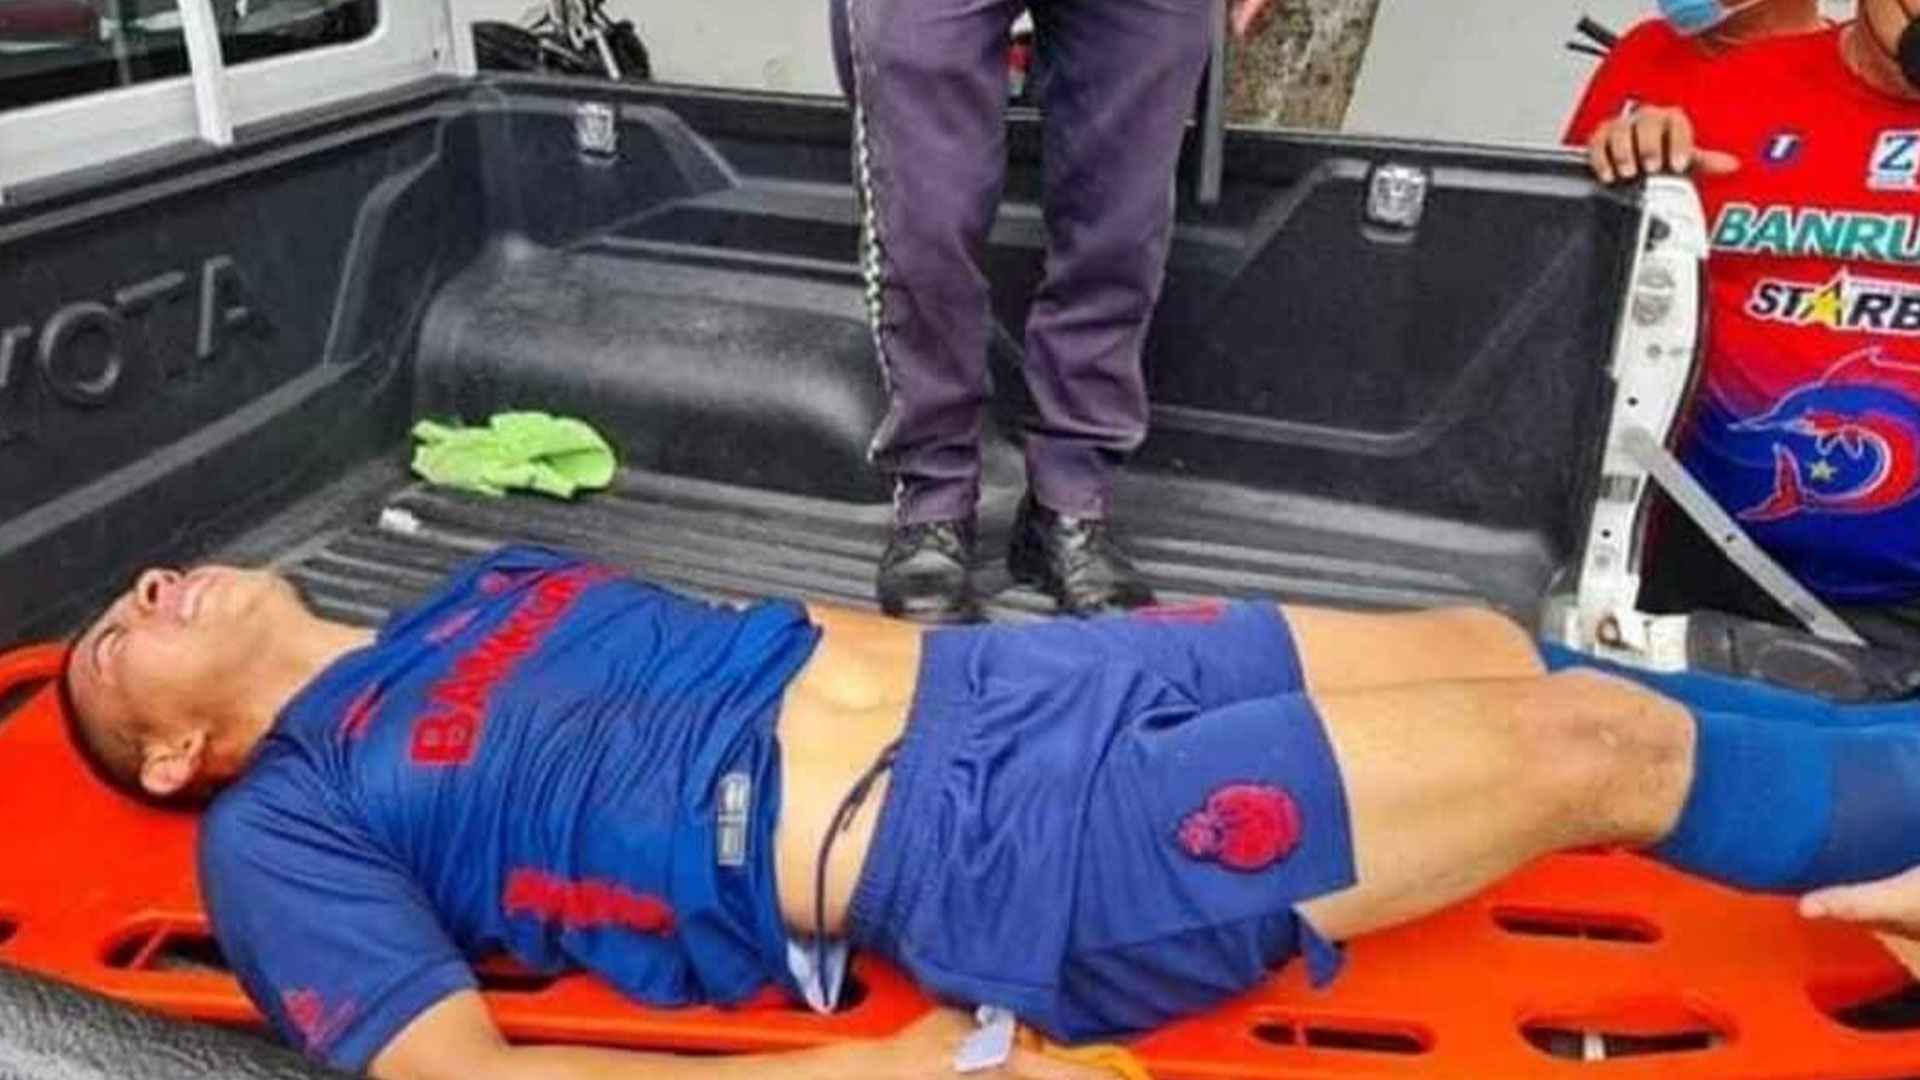 Al jugador de Municipal John Méndez lo transportaron en un picop del a Policía Municipal de Tránsito de Iztapa tras su lesión de peroné. Foto Prensa Libre: Invictos_Guate.